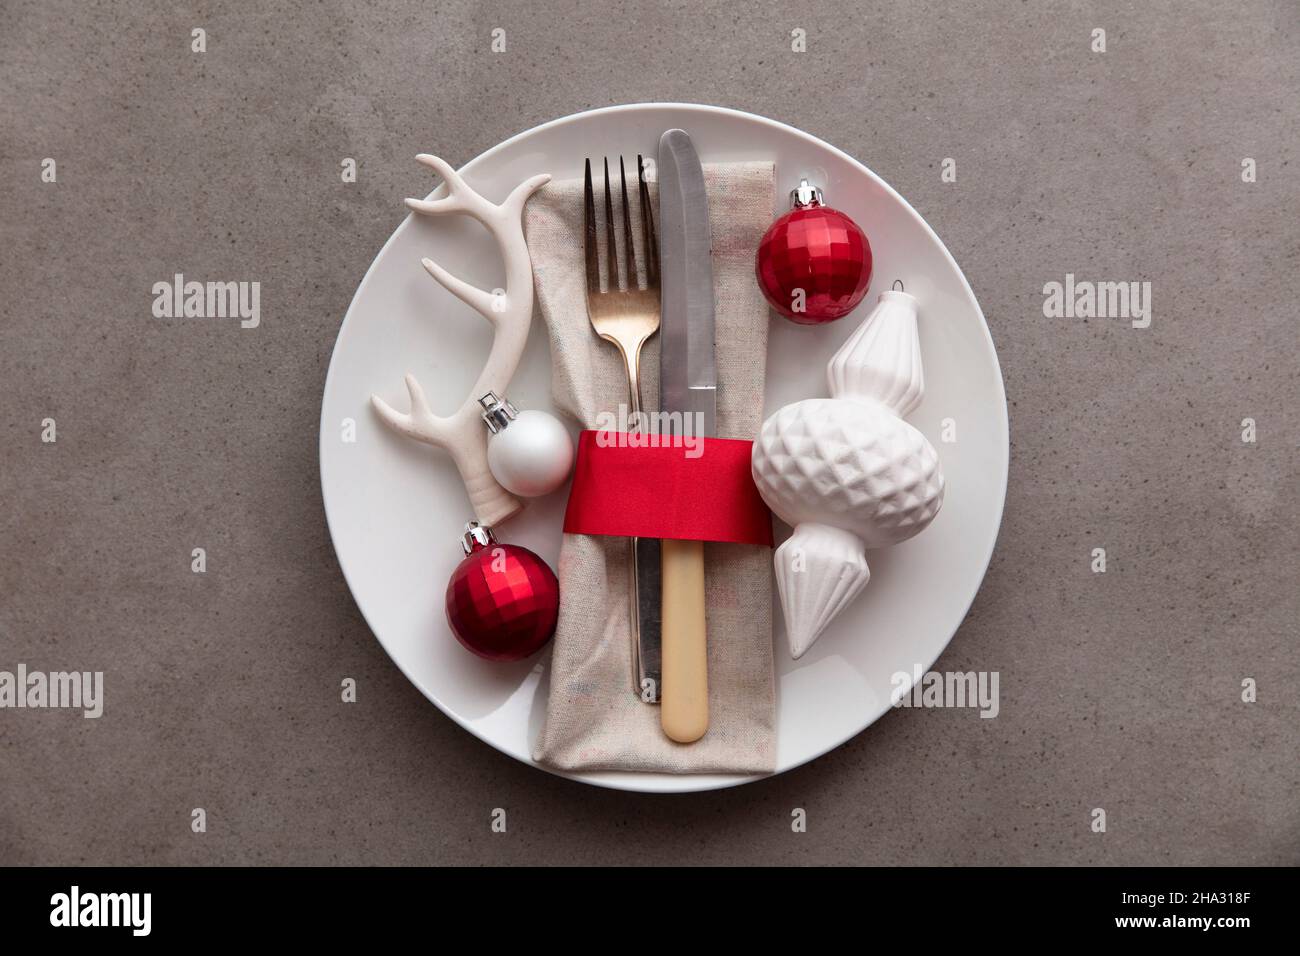 Cena natalizia di sottofondo. Piatto con coltello e forchetta e decorazioni natalizie Foto Stock